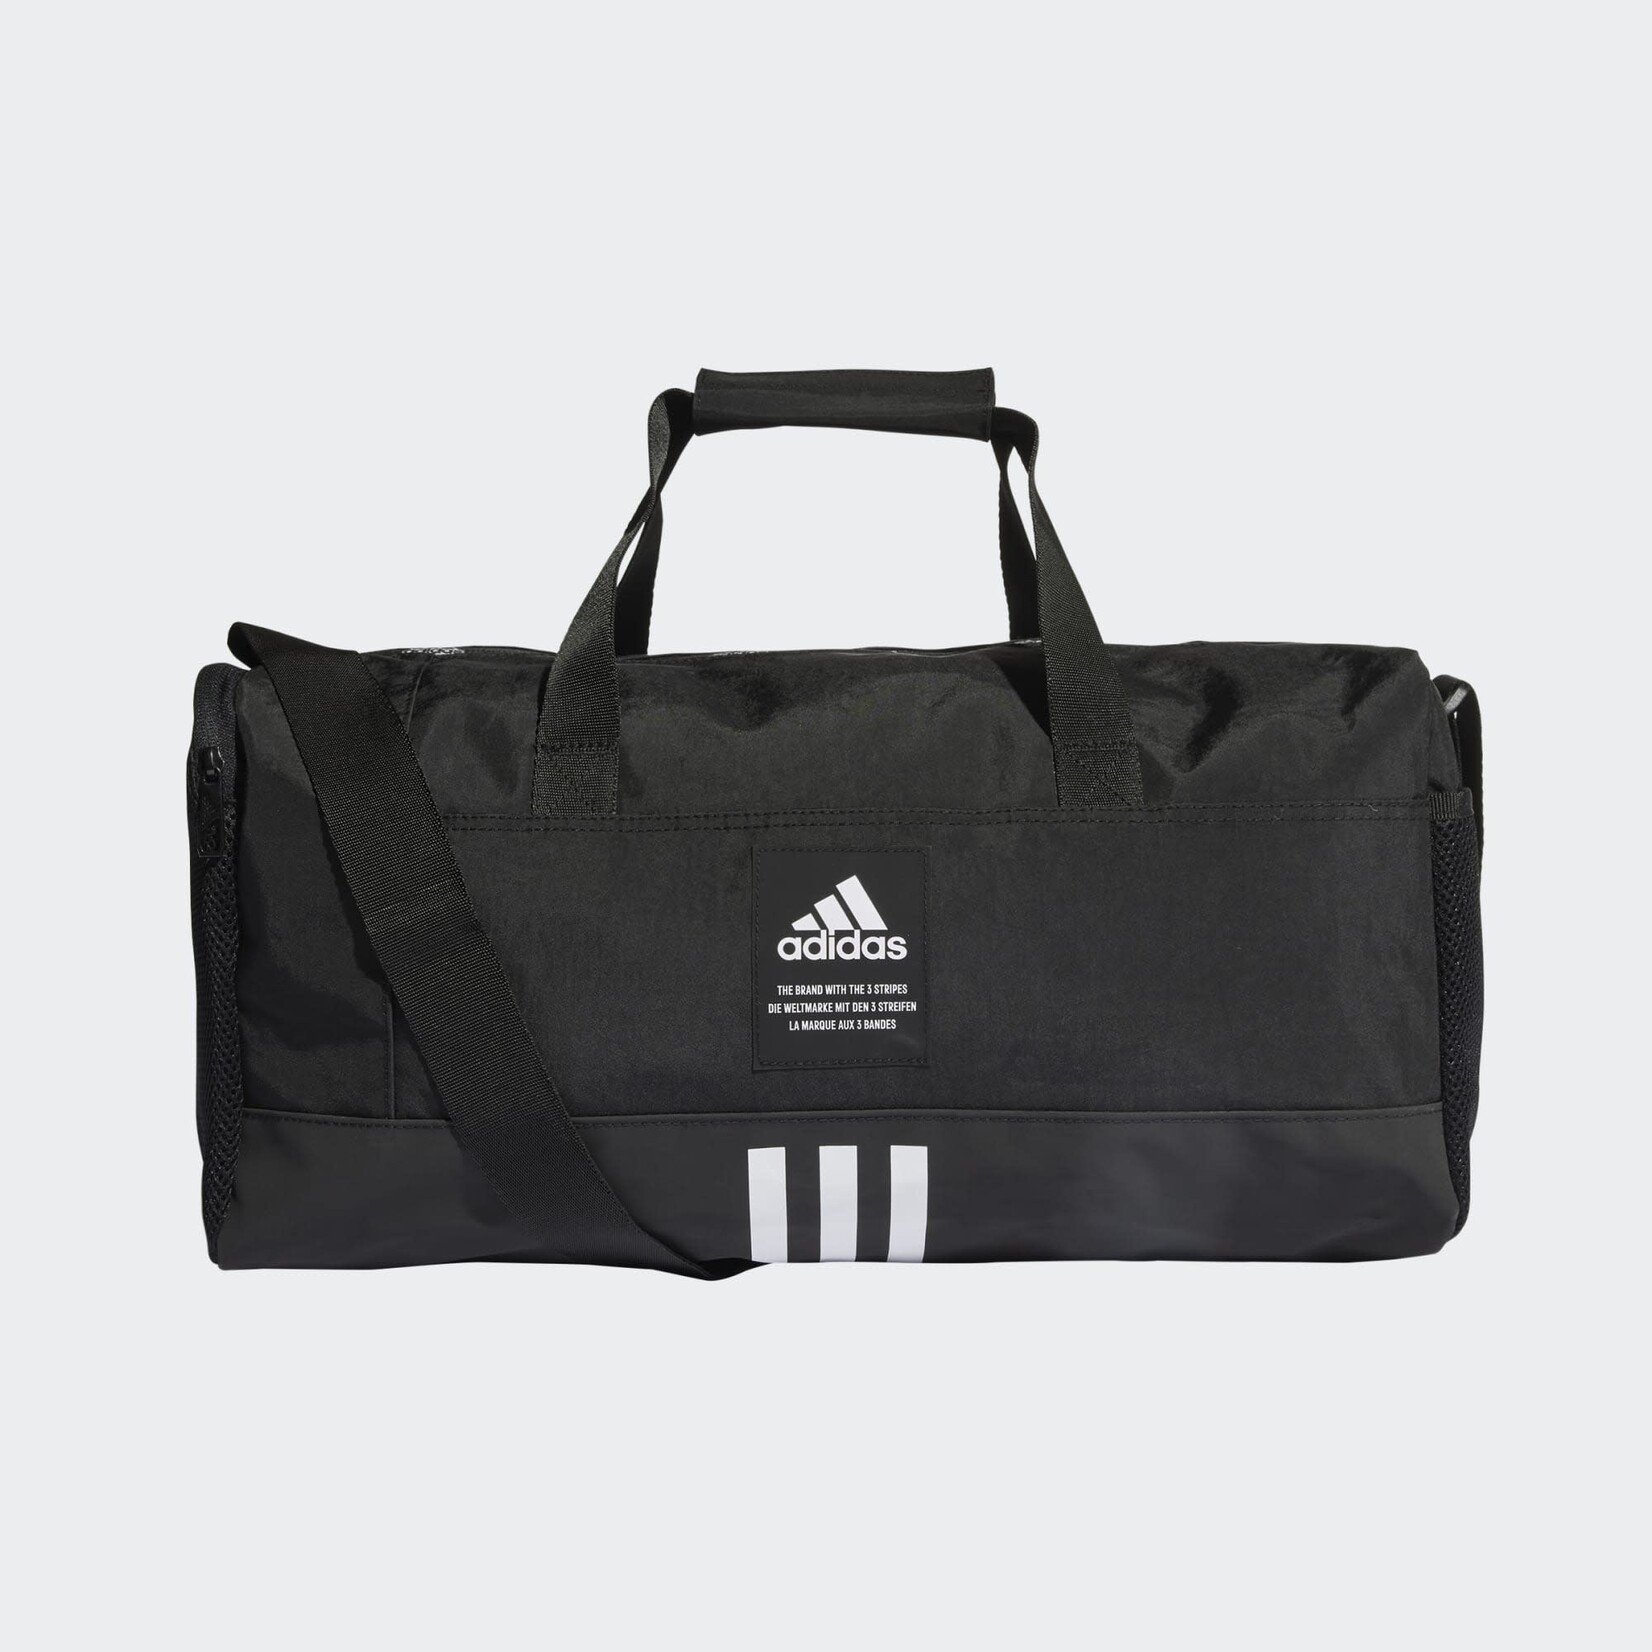 Adidas Adidas Duffle Bag, 4ATHLTS